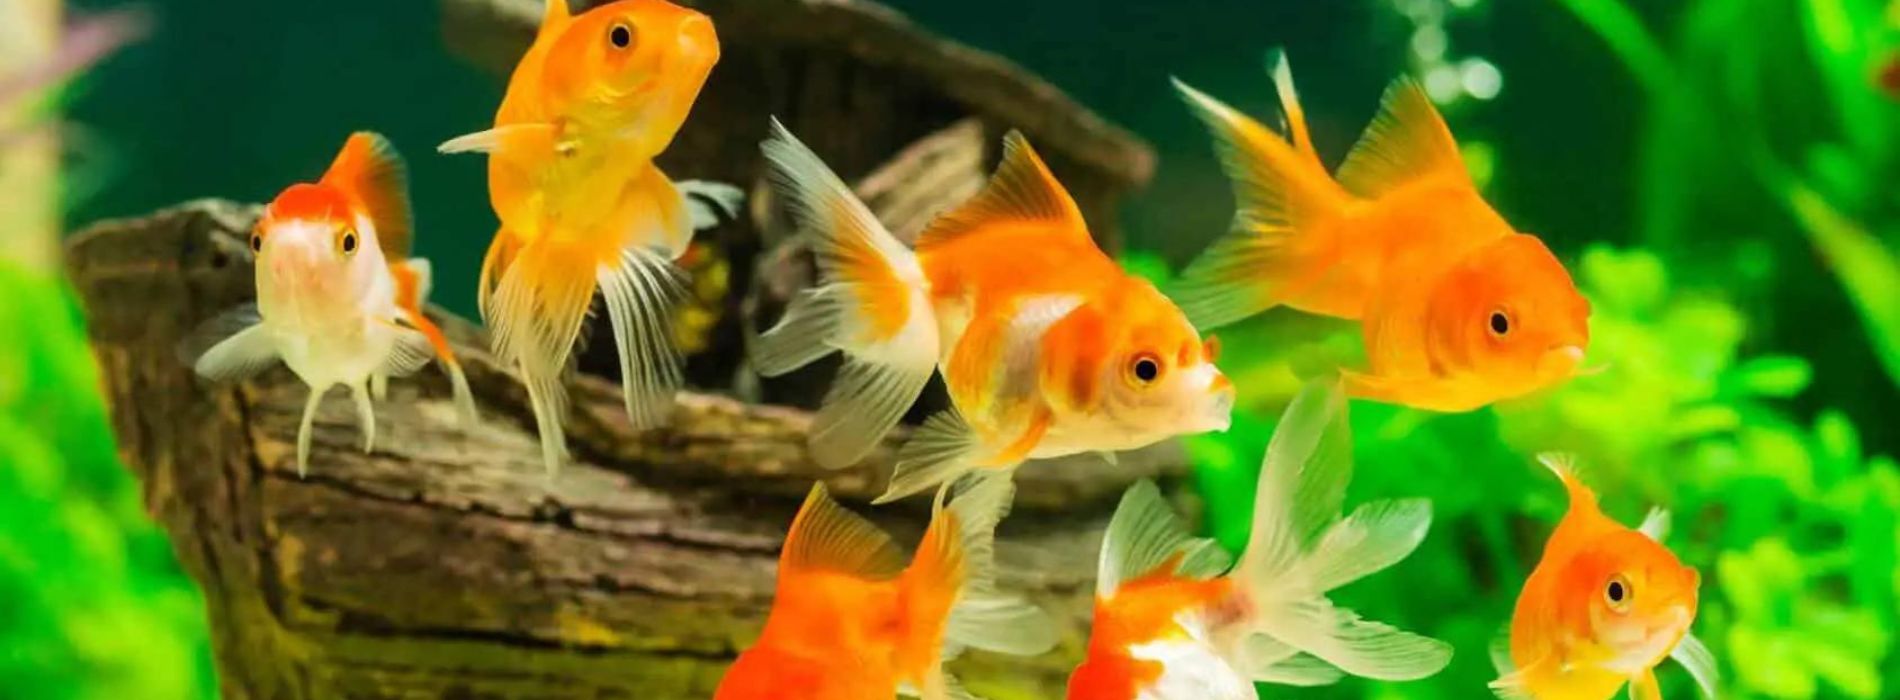 Carassius-auratus-swimming-with-goldfish-friend